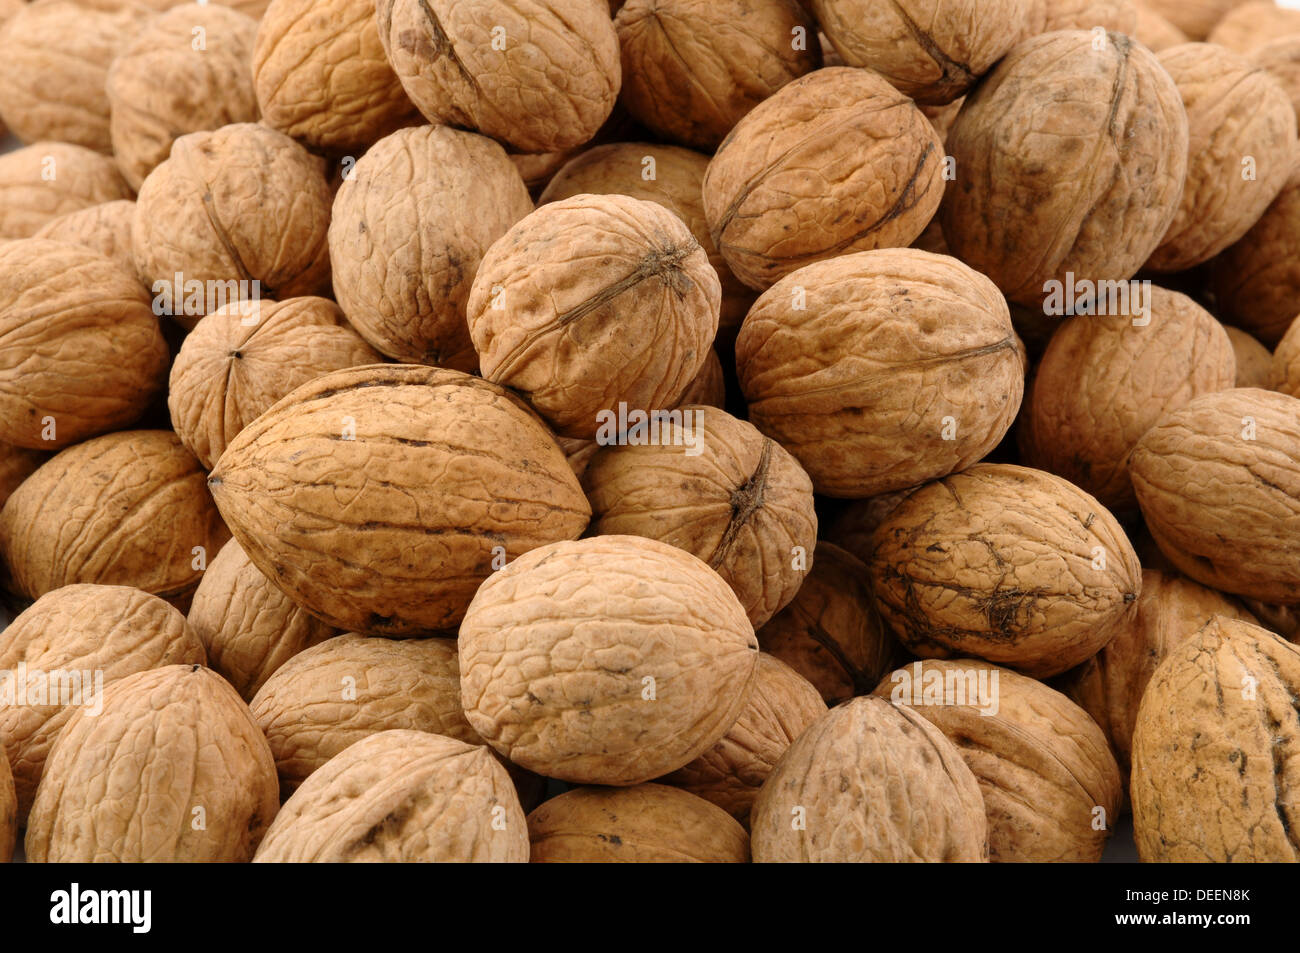 closeup of many walnuts Stock Photo